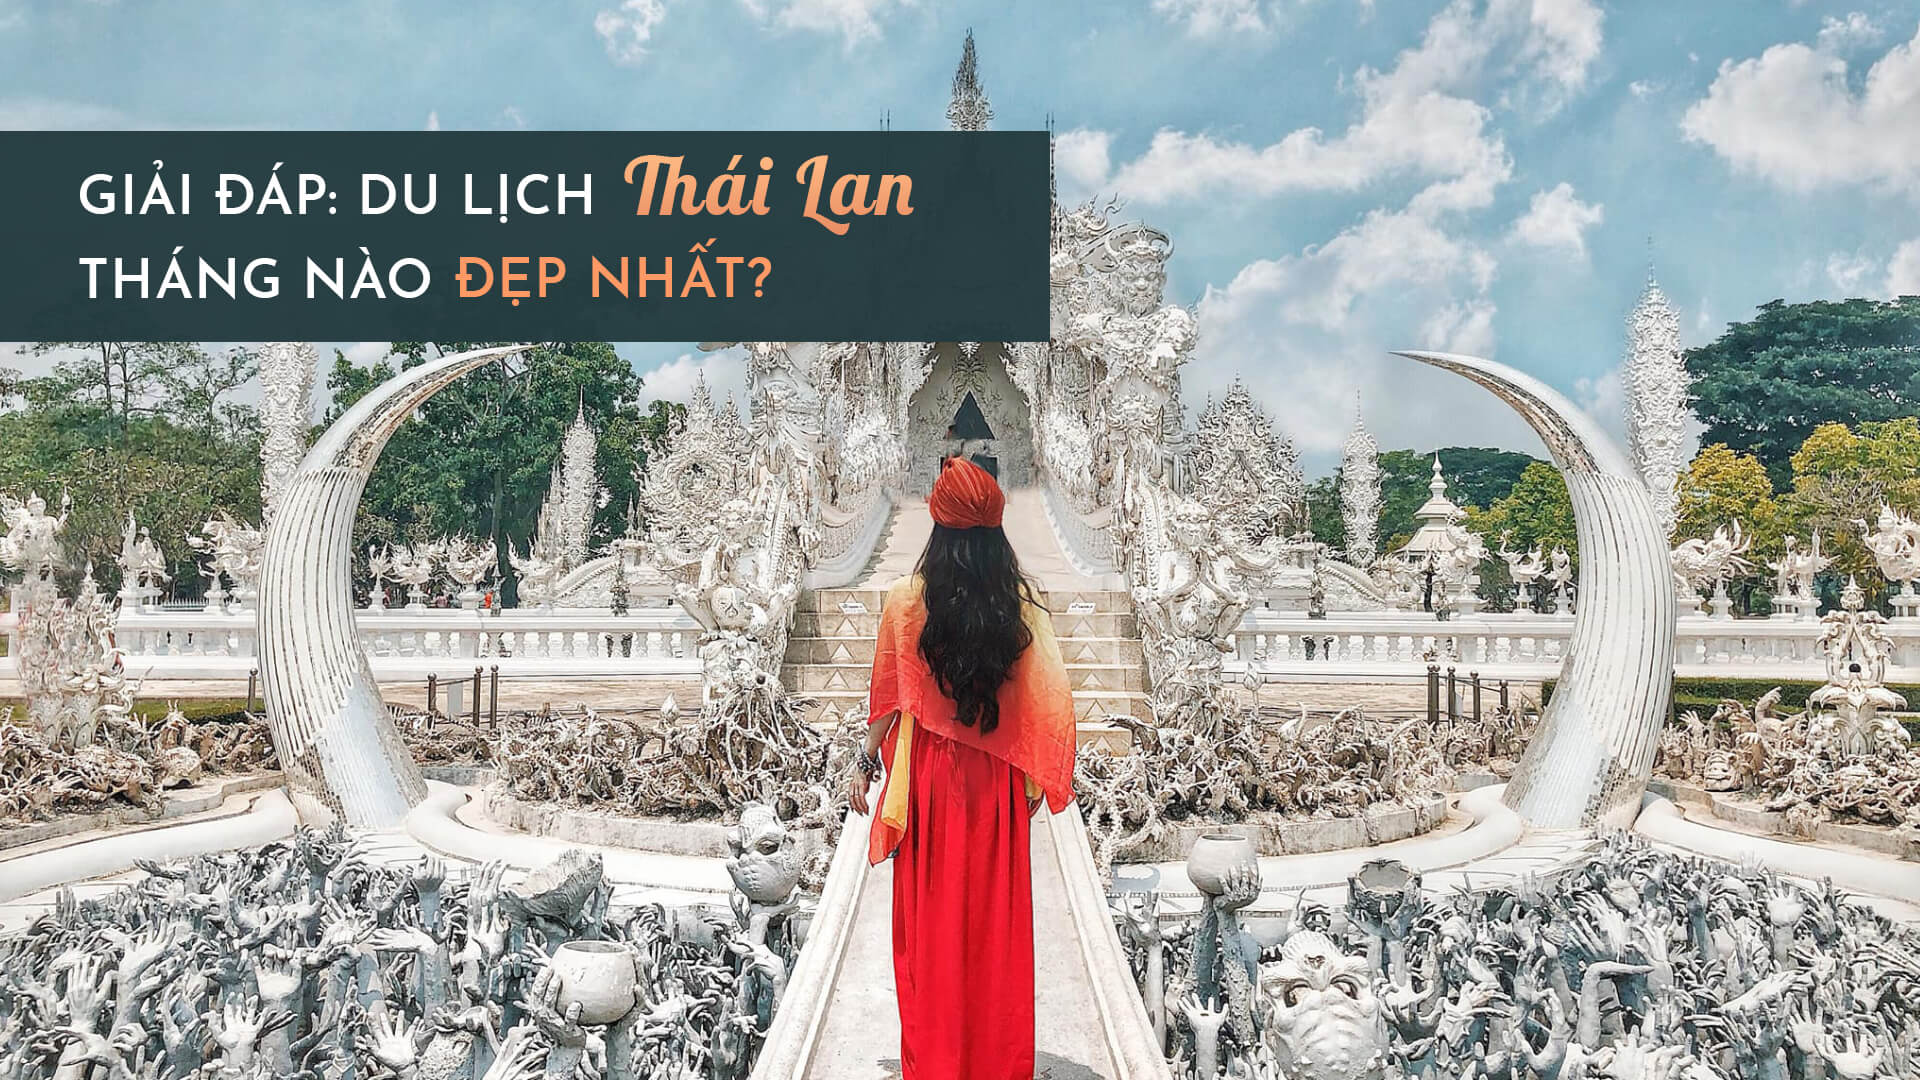 GIẢI ĐÁP] Du lịch Thái Lan tháng nào đẹp nhất và rẻ nhất?